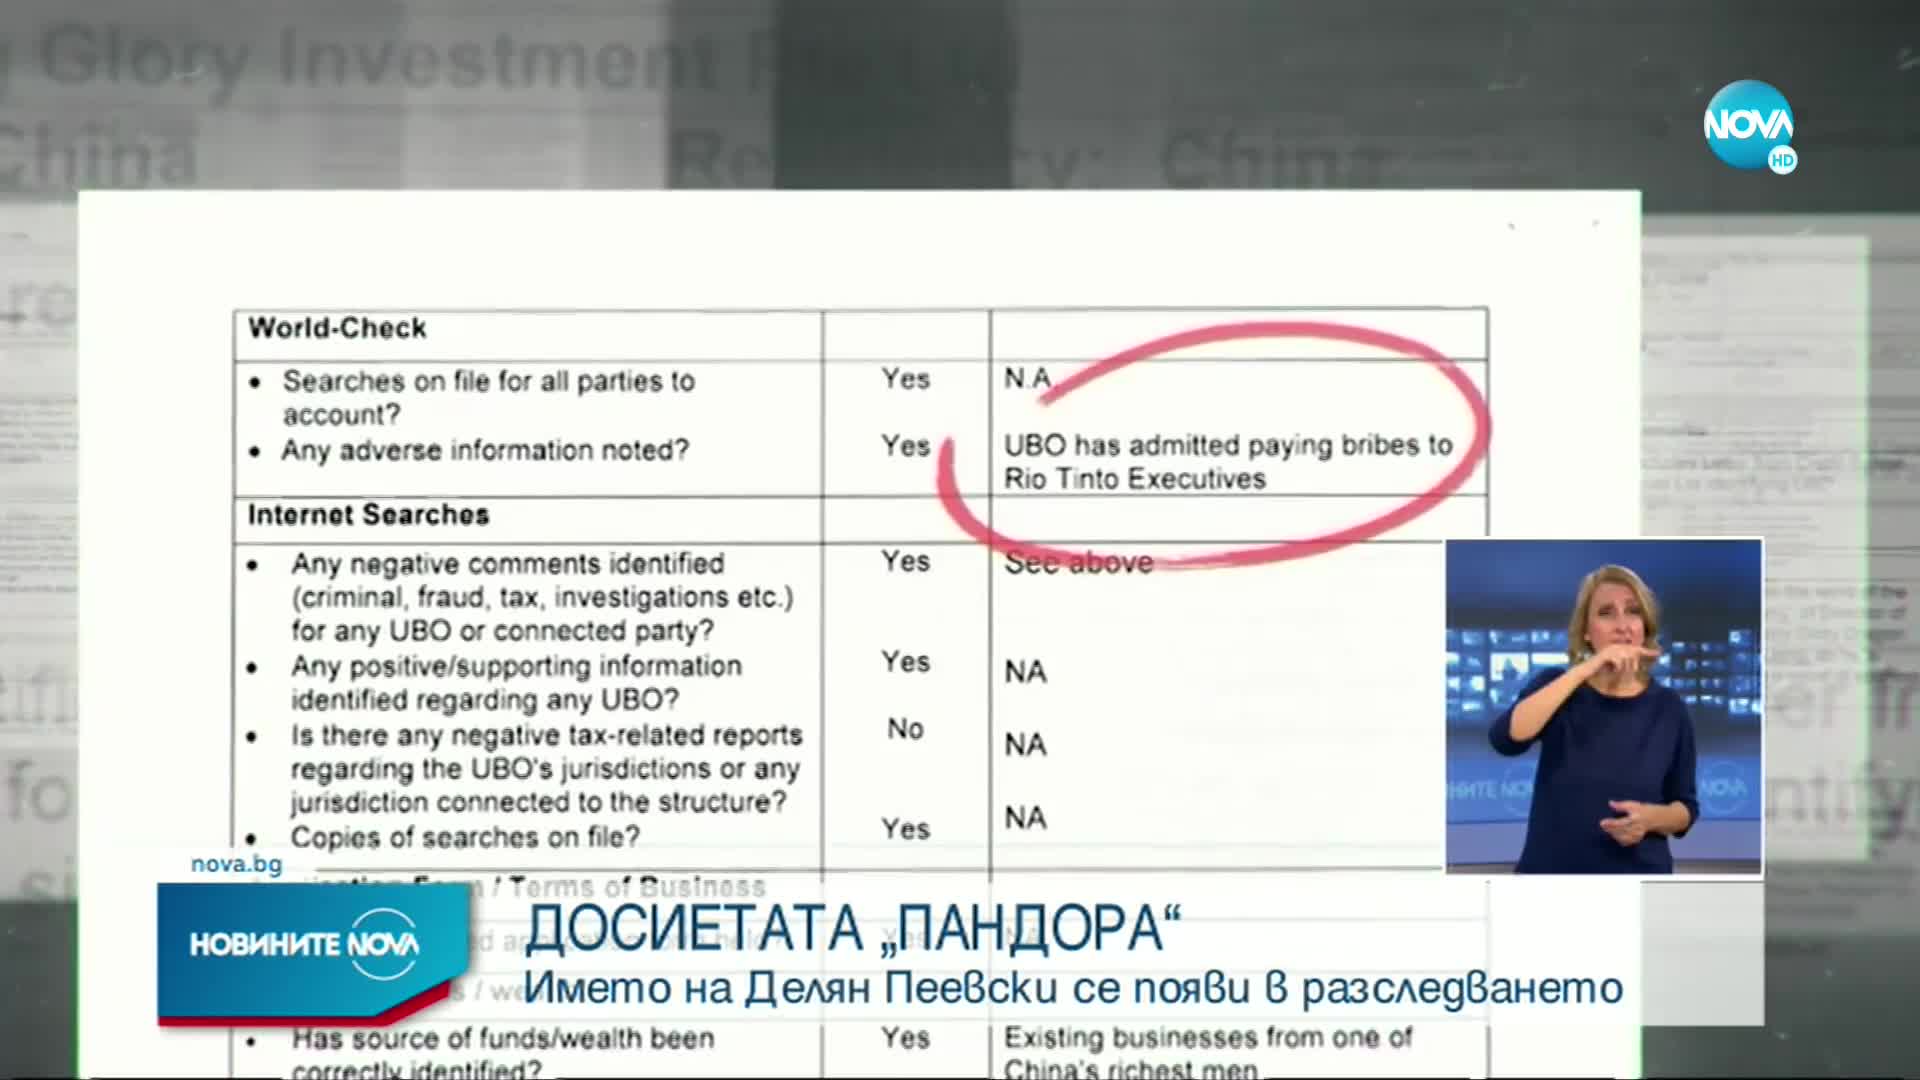 "ДОСИЕТАТА ПАНДОРА": Сръбски министър си купил апартаменти по българското Черноморие (ОБЗОР)